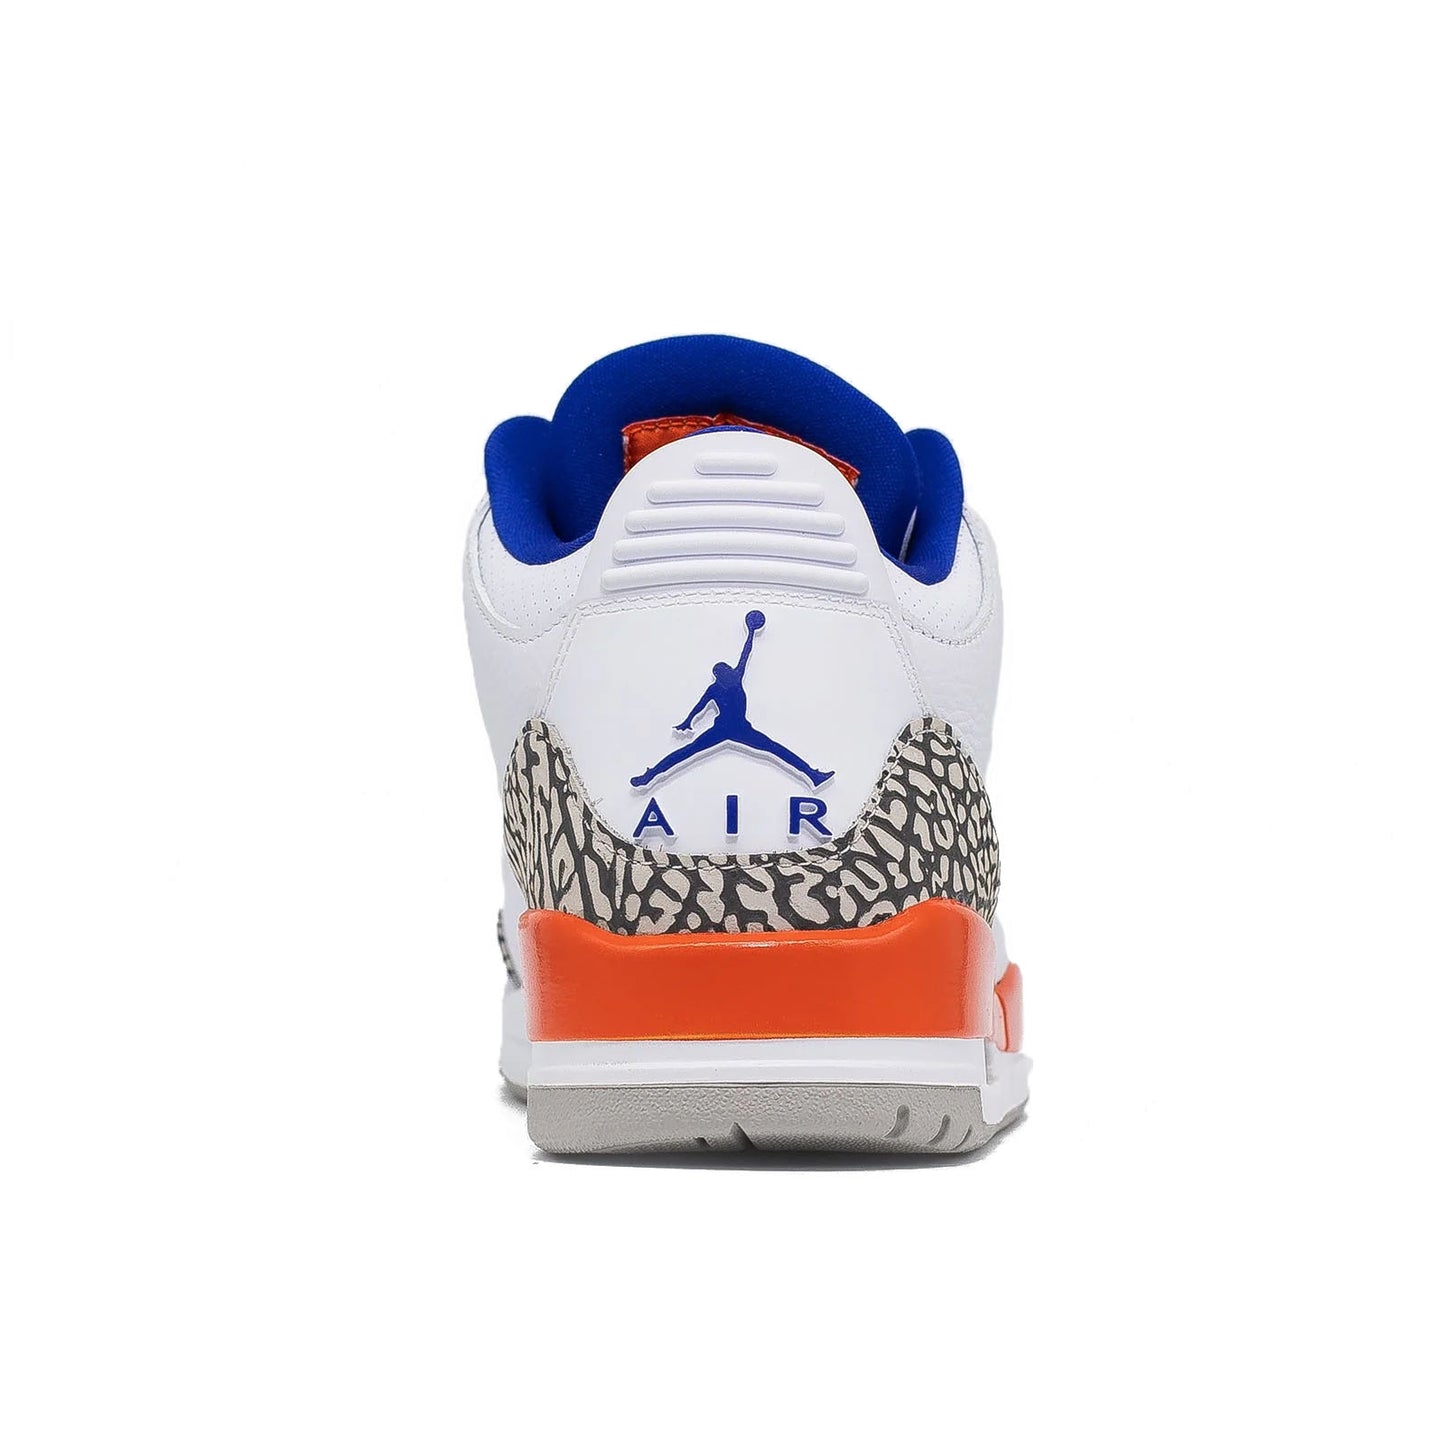 Air Jordan 3, Knicks